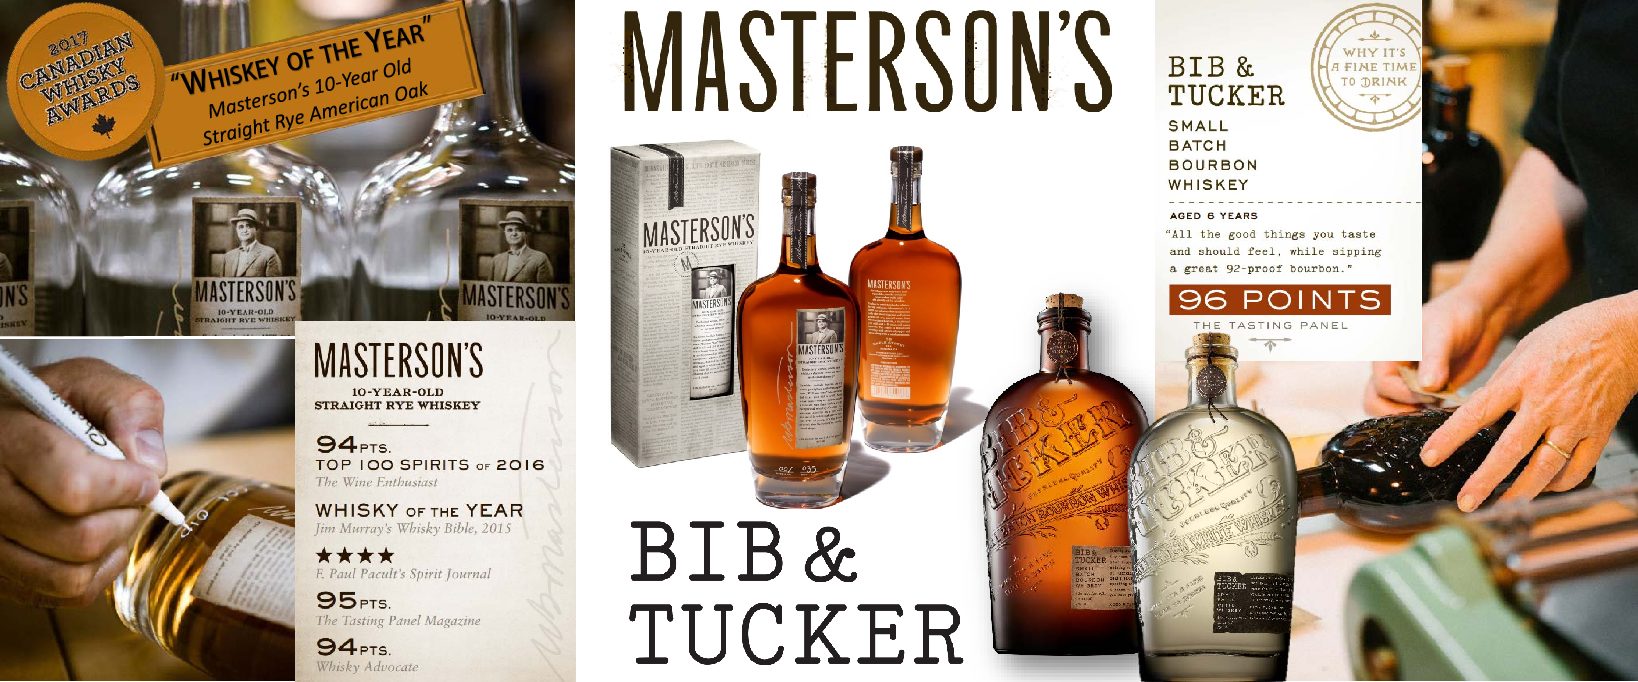 Masterson’s and Bib & Tucker